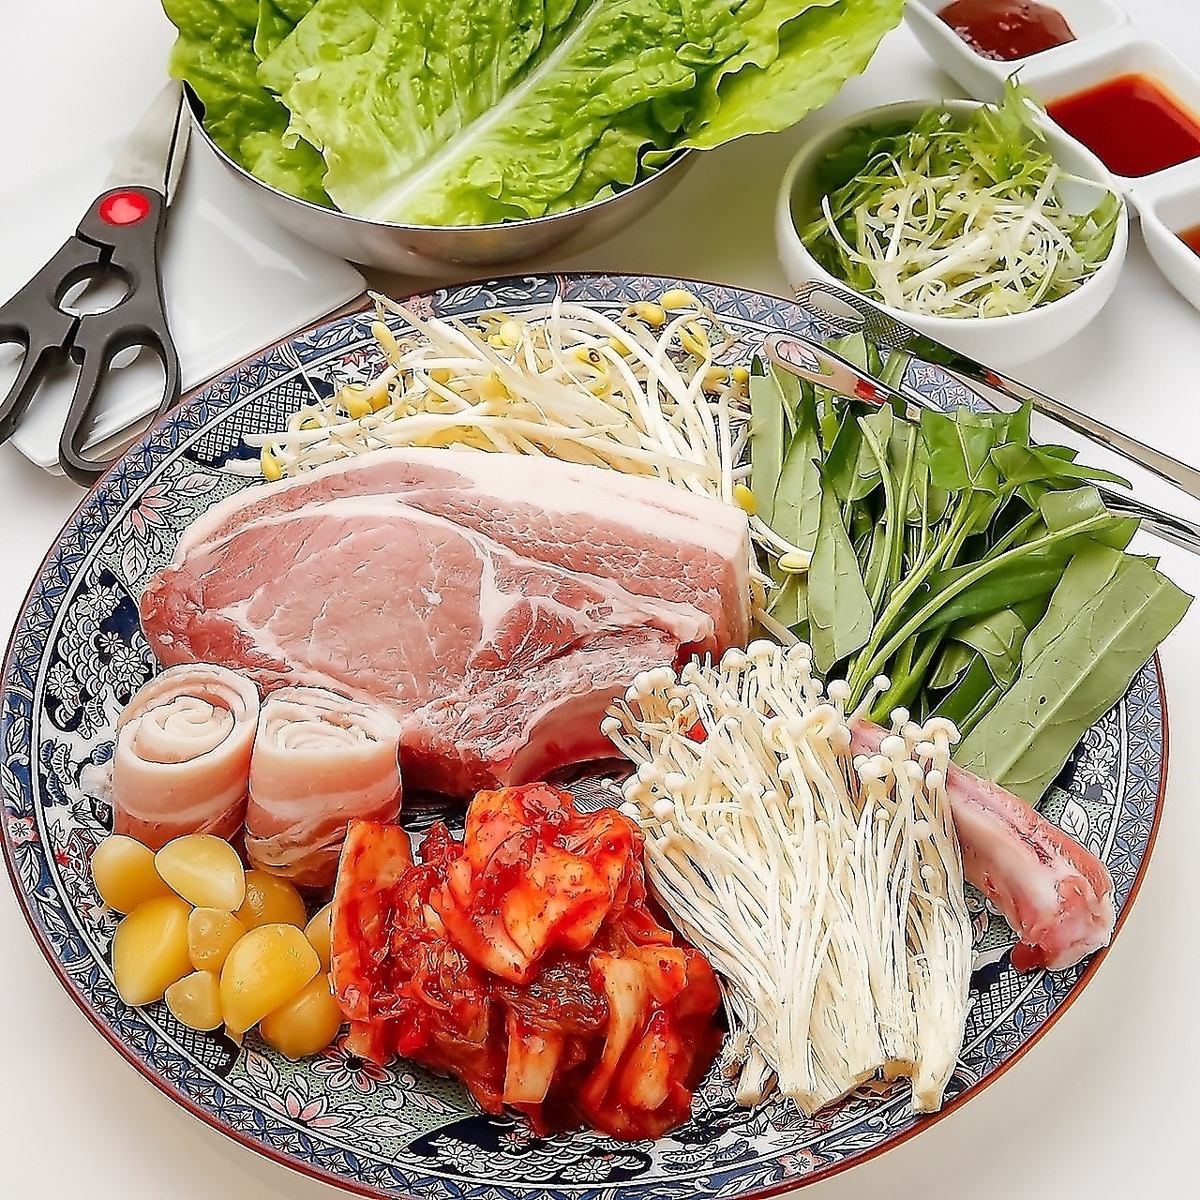 自助餐套餐 ★五花肉套餐 + 韩国料理自助餐 2,850日元